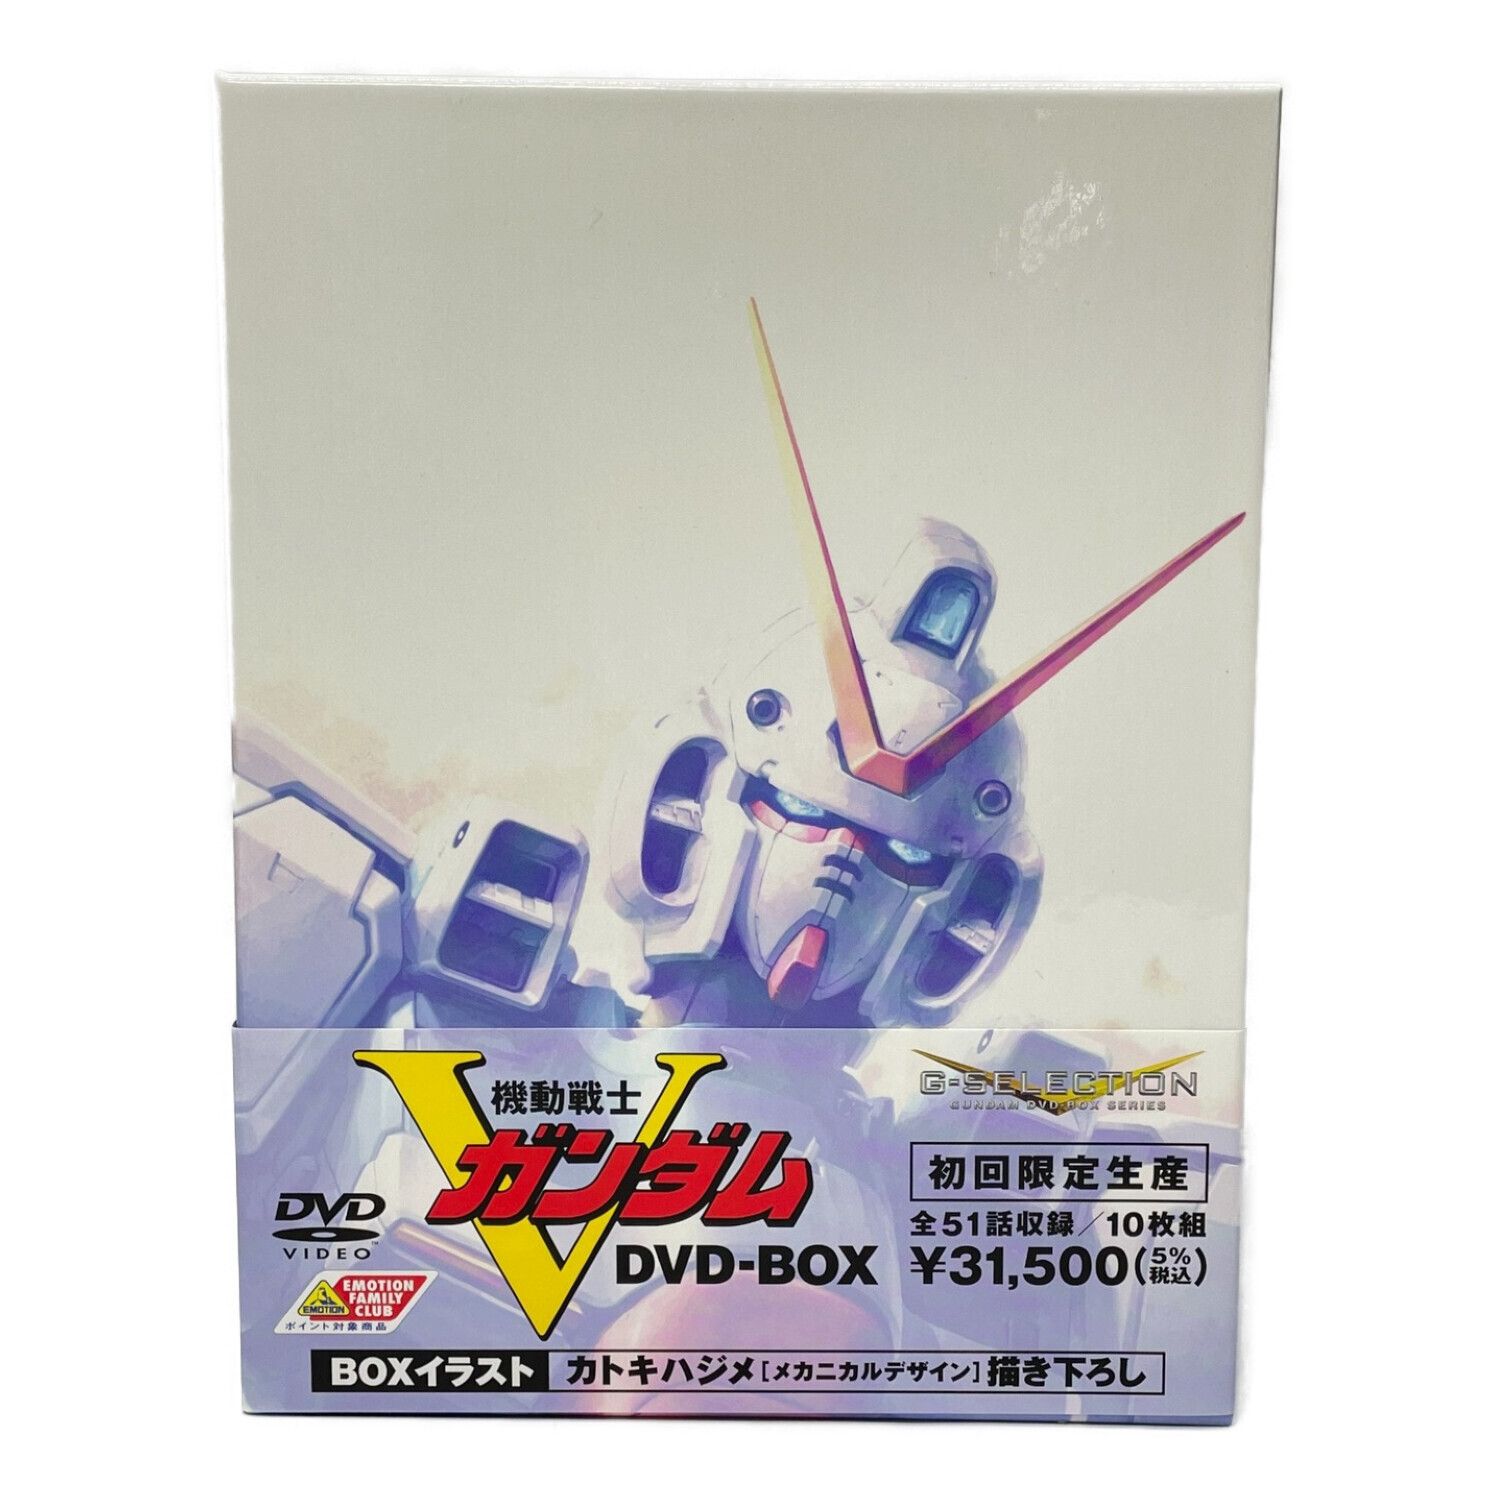 機動戦士Vガンダム DVD-BOX〈初回限定生産・10枚組〉